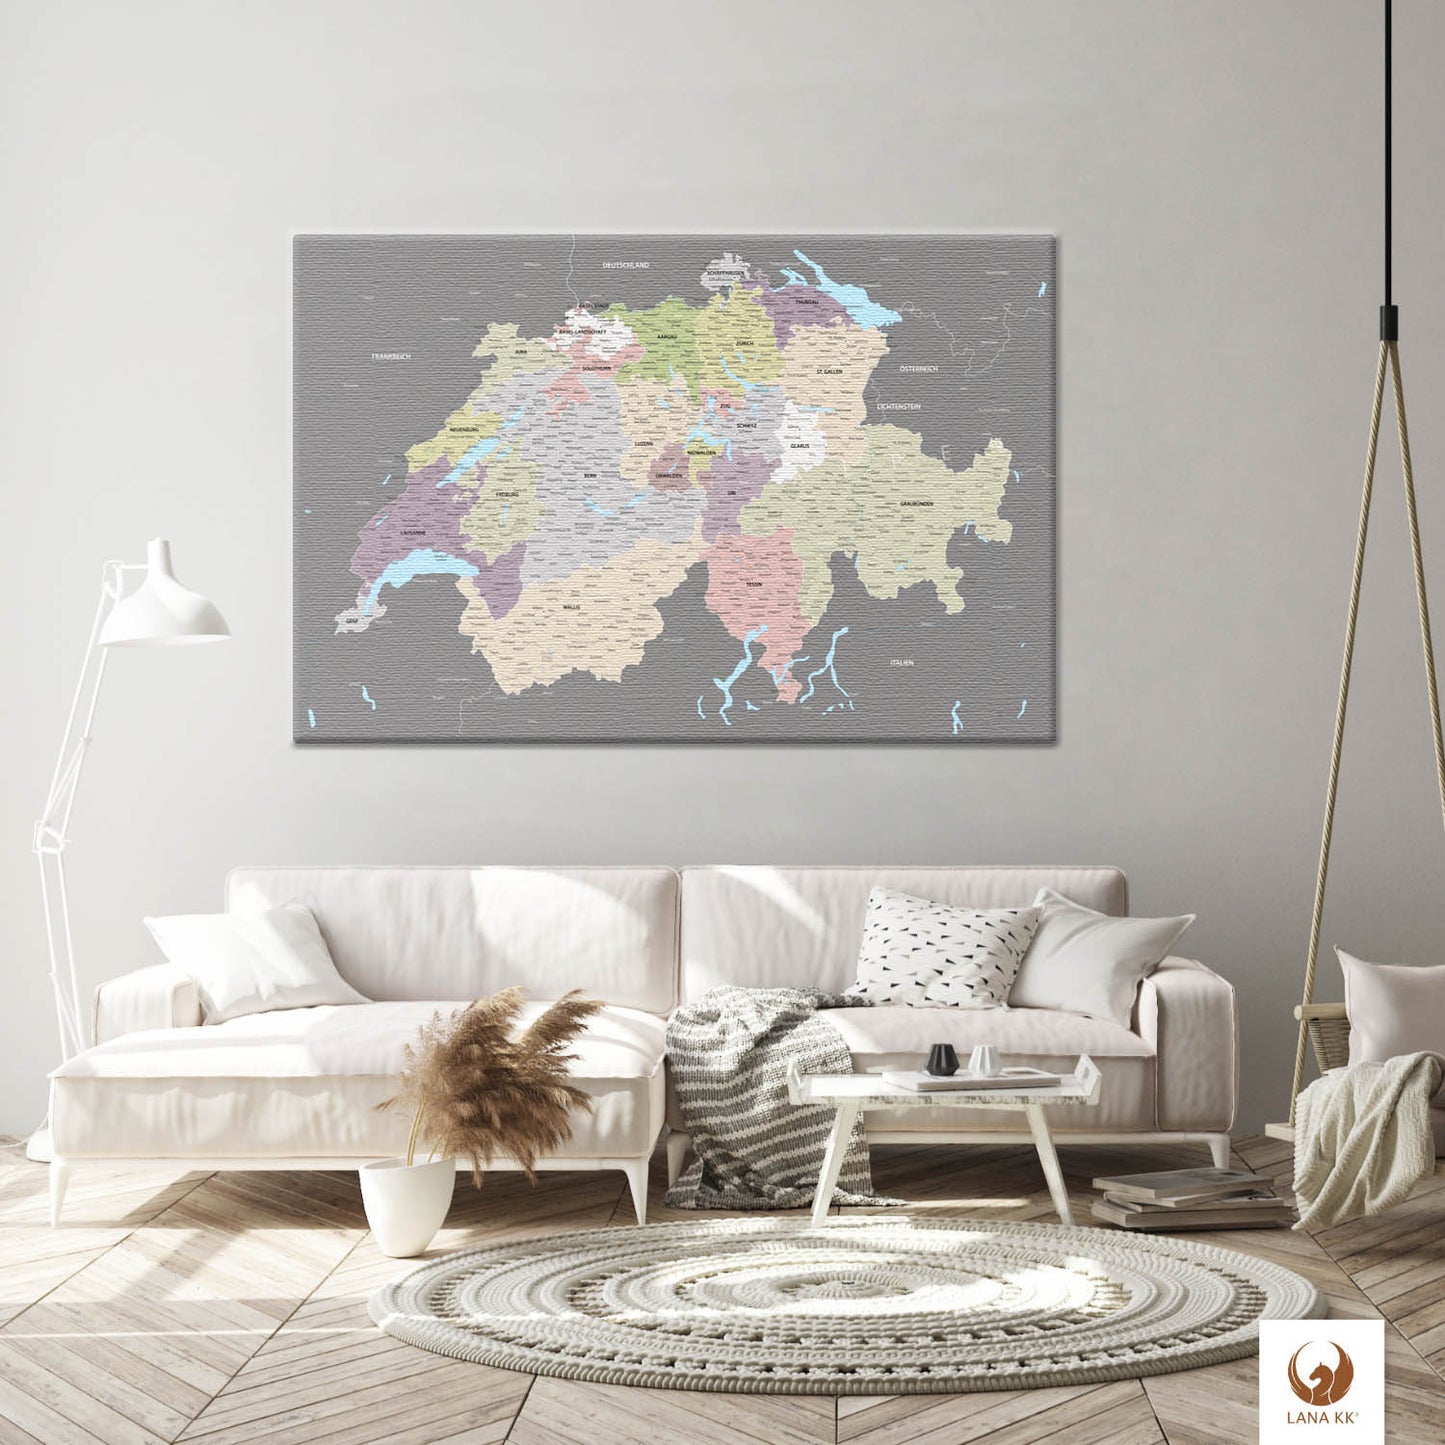 Die Welt als Zentrum Deiner Wohnung. Deine Schweizkarte Graphit Grau für sich mit ihren ausgewogenen Farben ideal in Dein Wohnkonzept ein.